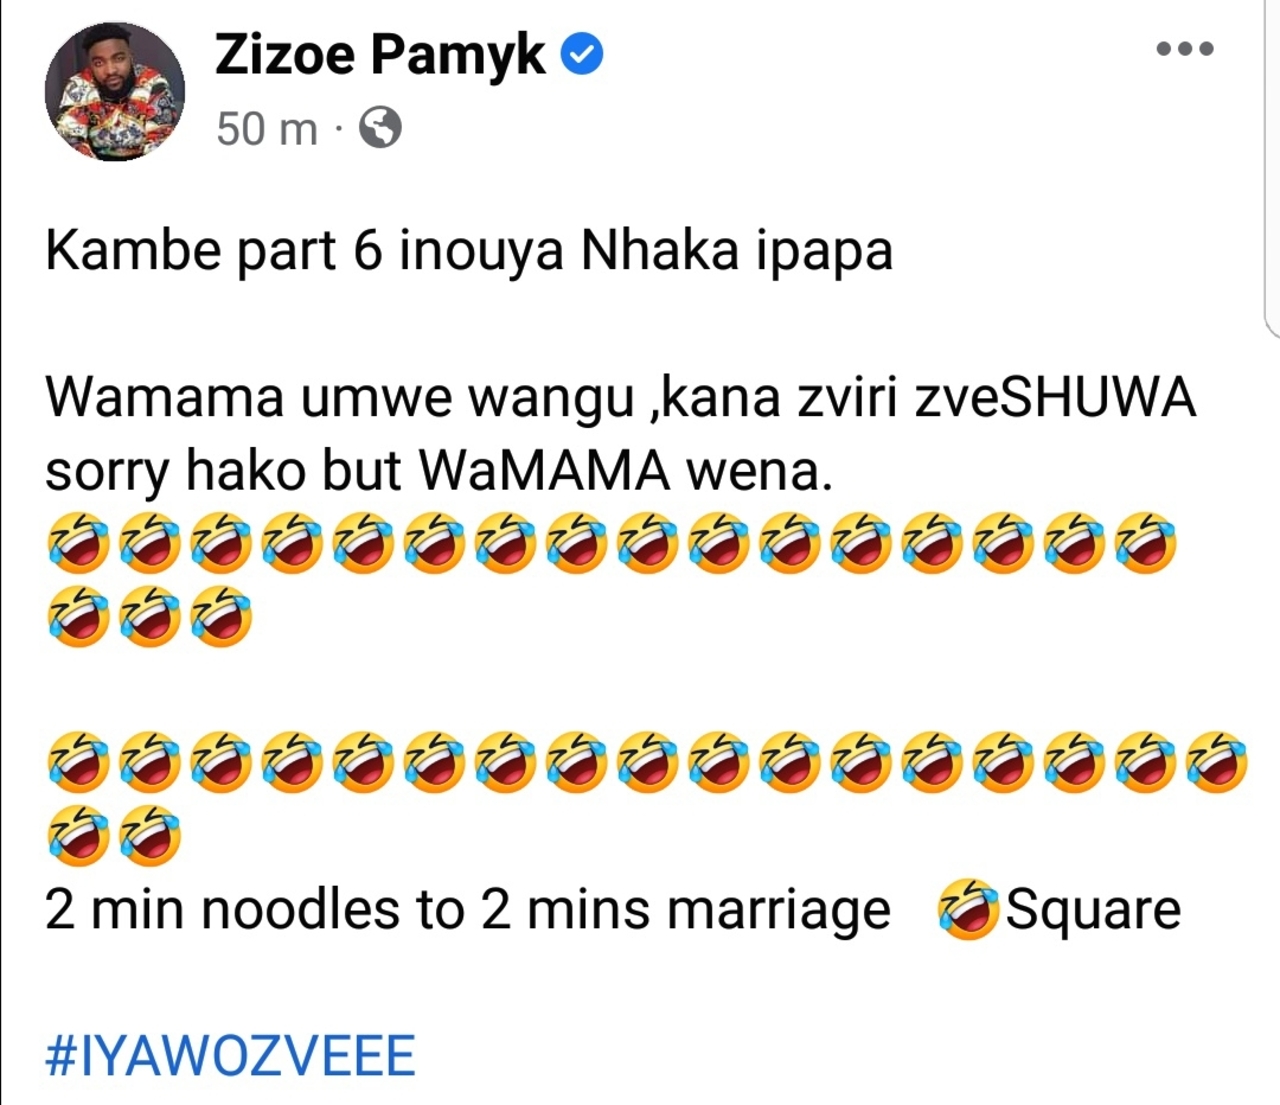 Mai TT’s Ex-Lover Zizoe Pamyk Mocks Her Marriage Troubles 